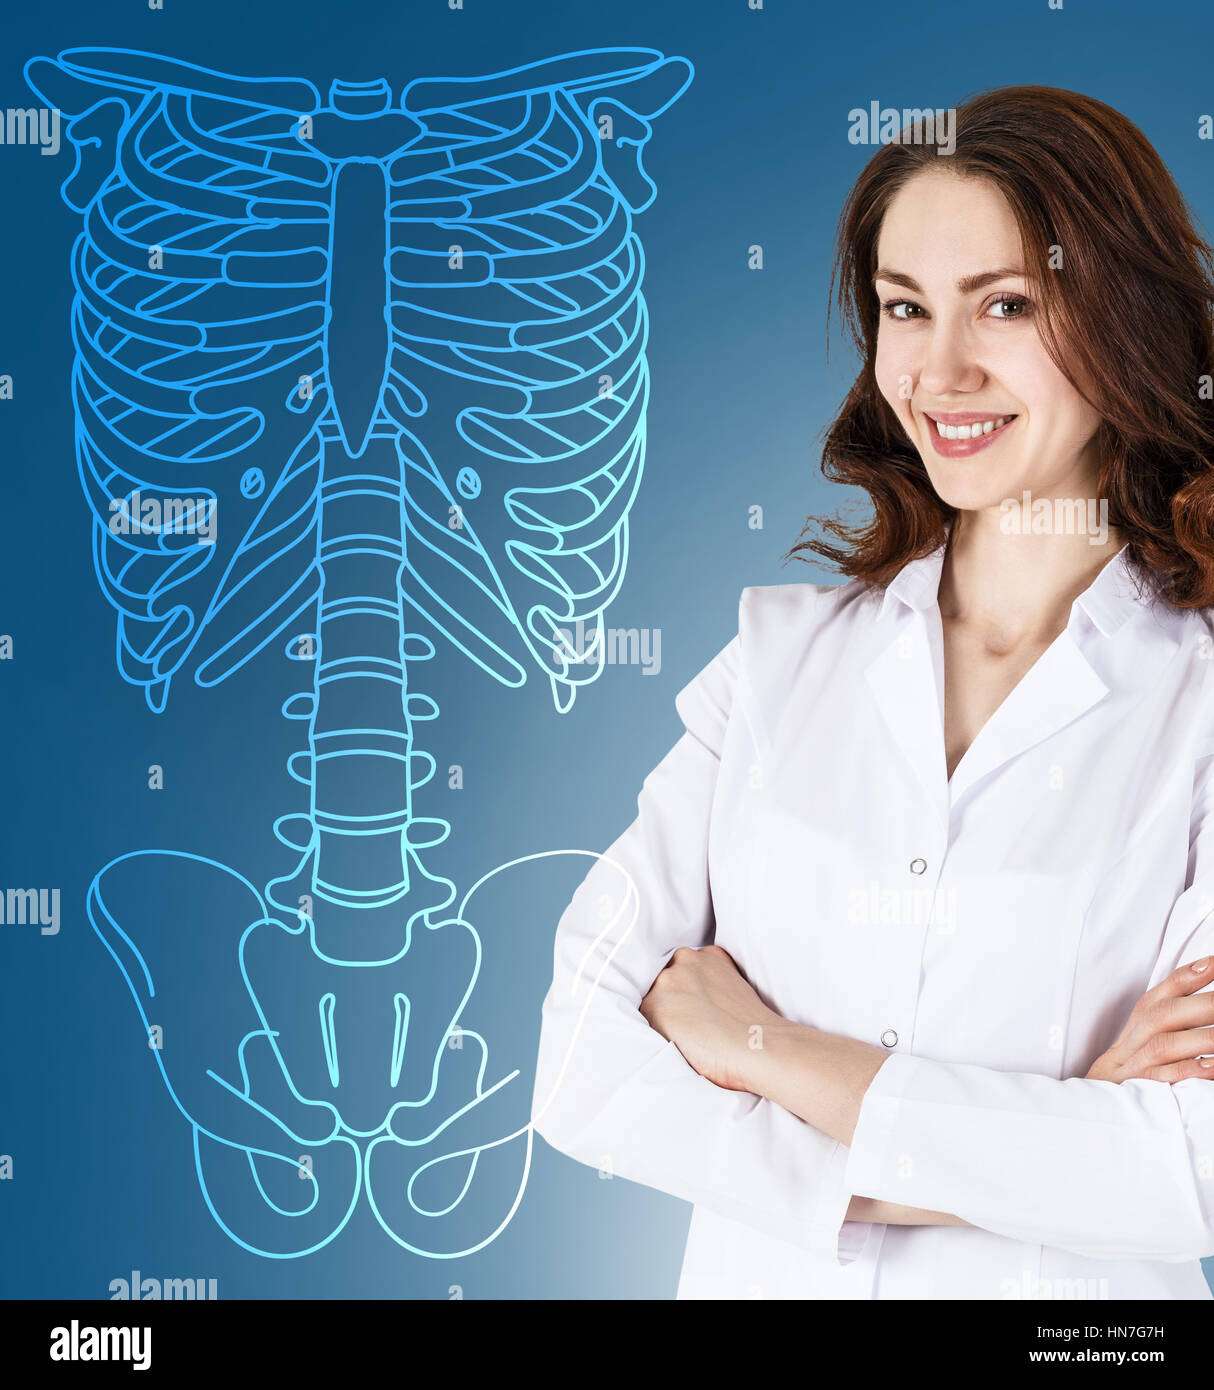 Médecin femme debout près de dimensions squelette humain Banque D'Images